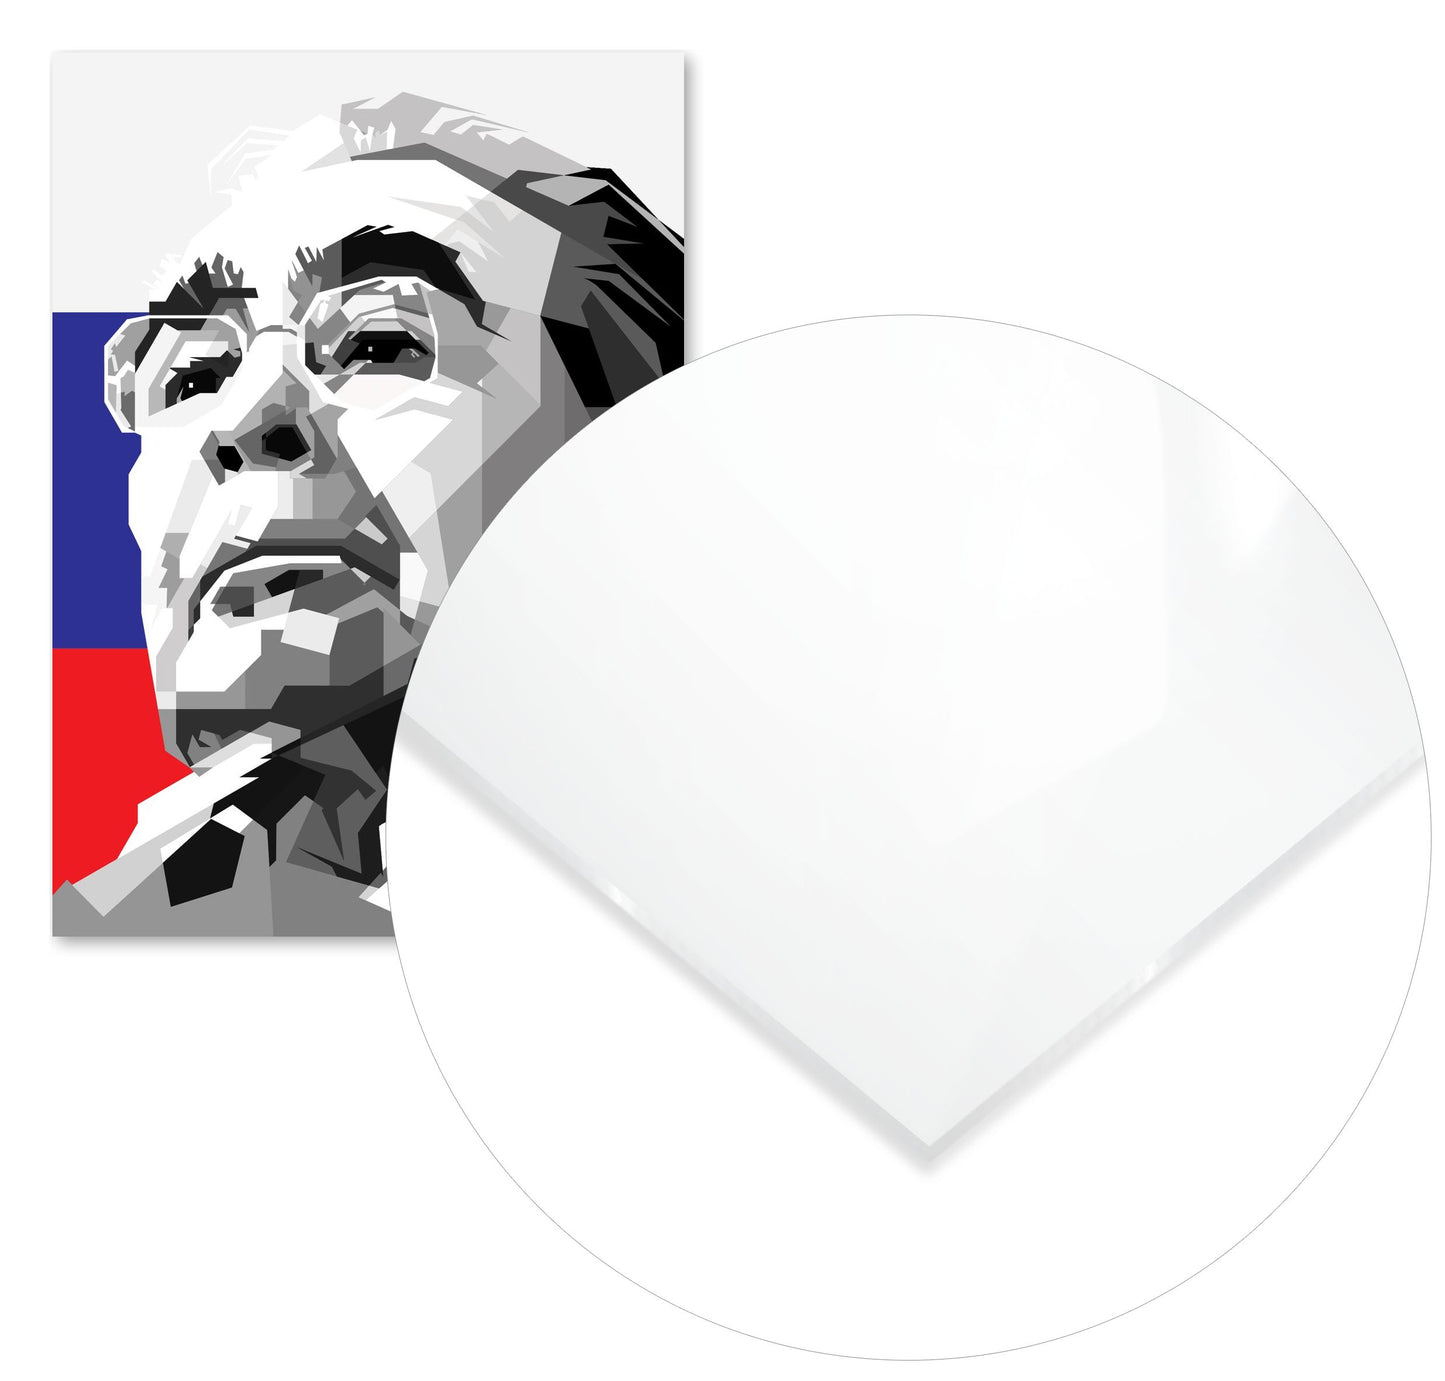 Leonid Brezhnev Blackwhite Portrait - @Artkreator